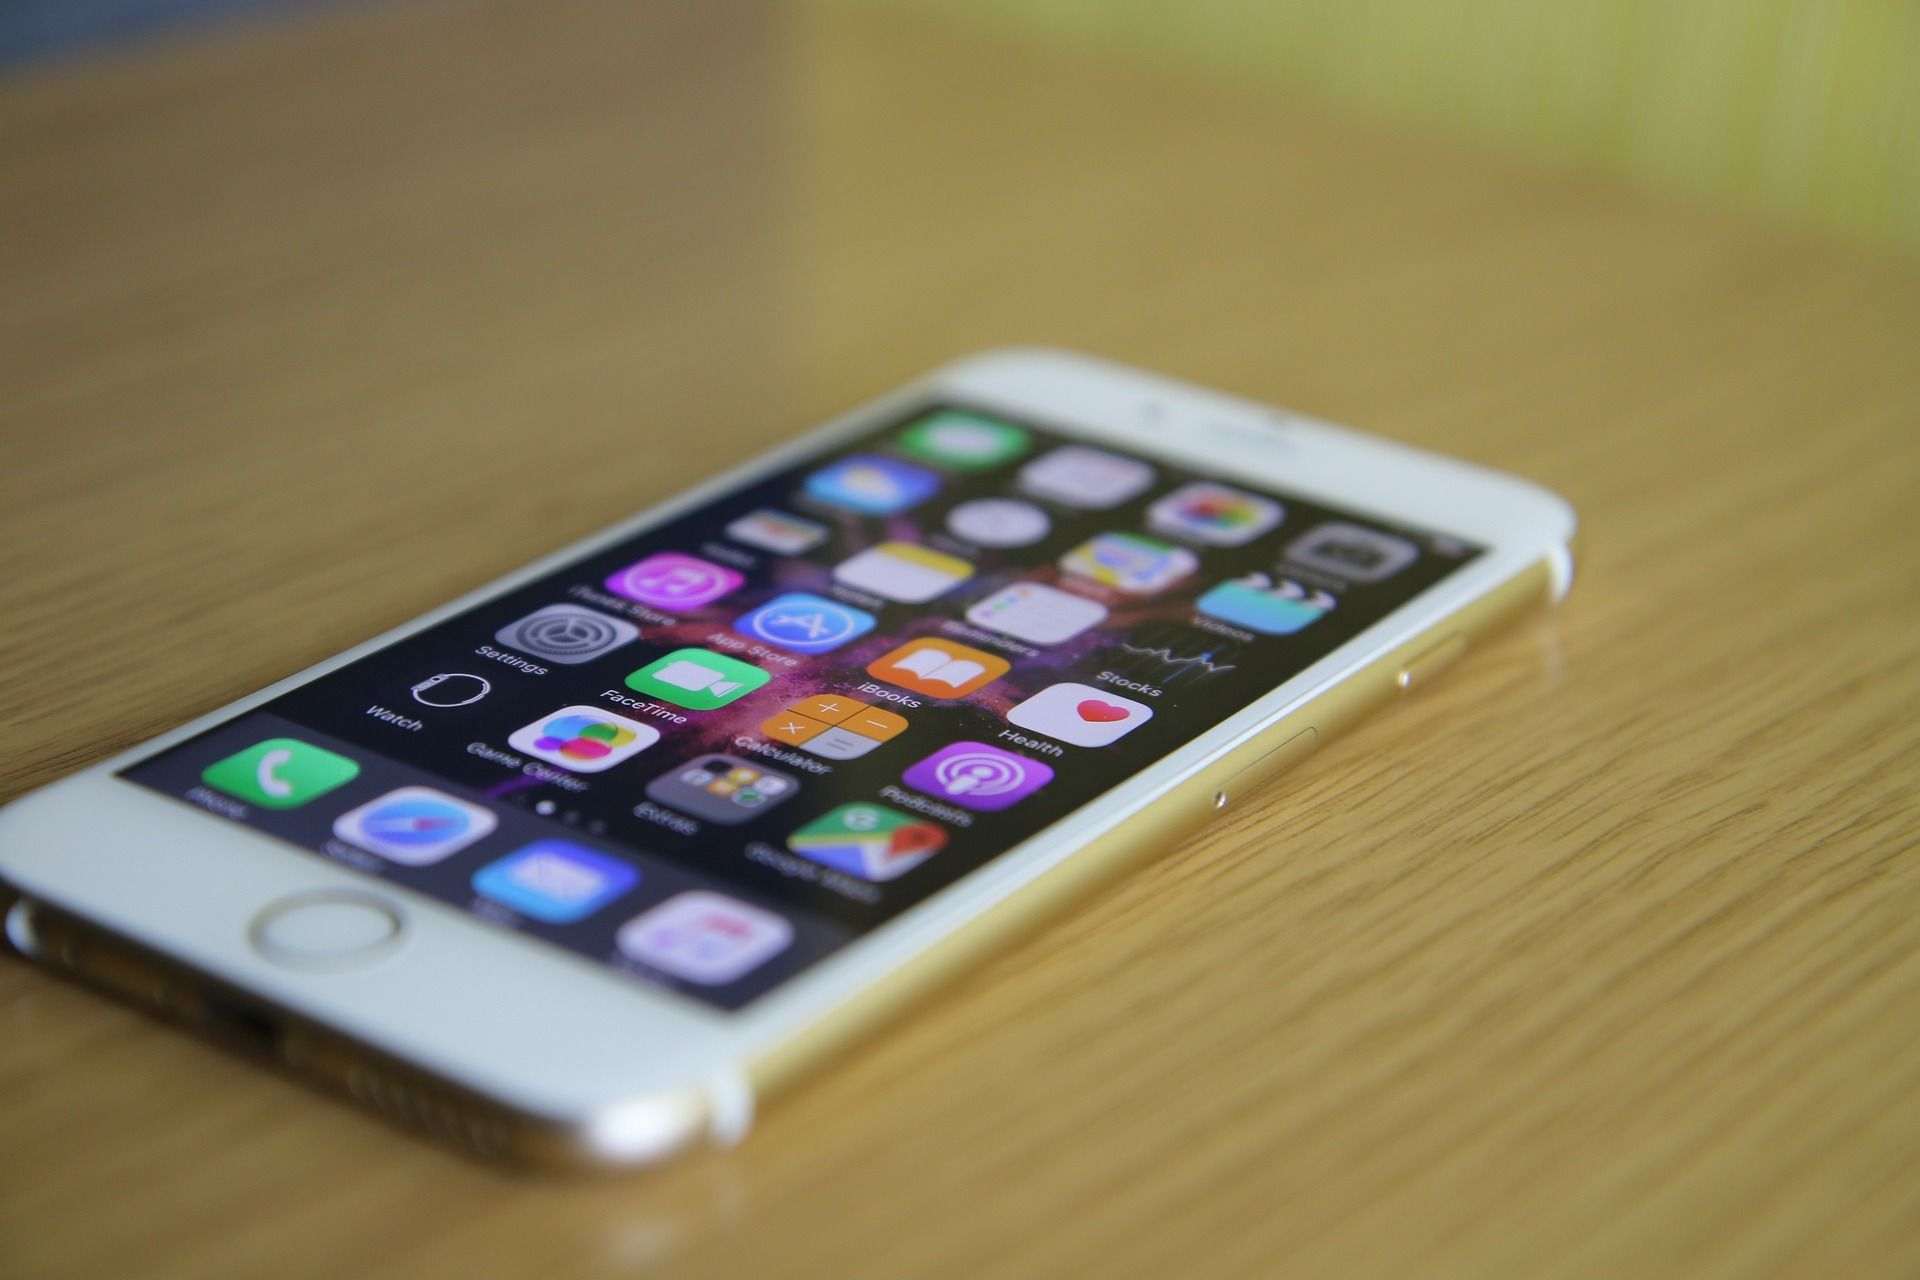 La OCU demanda a Apple por prácticas comerciales "injustas y engañosas"